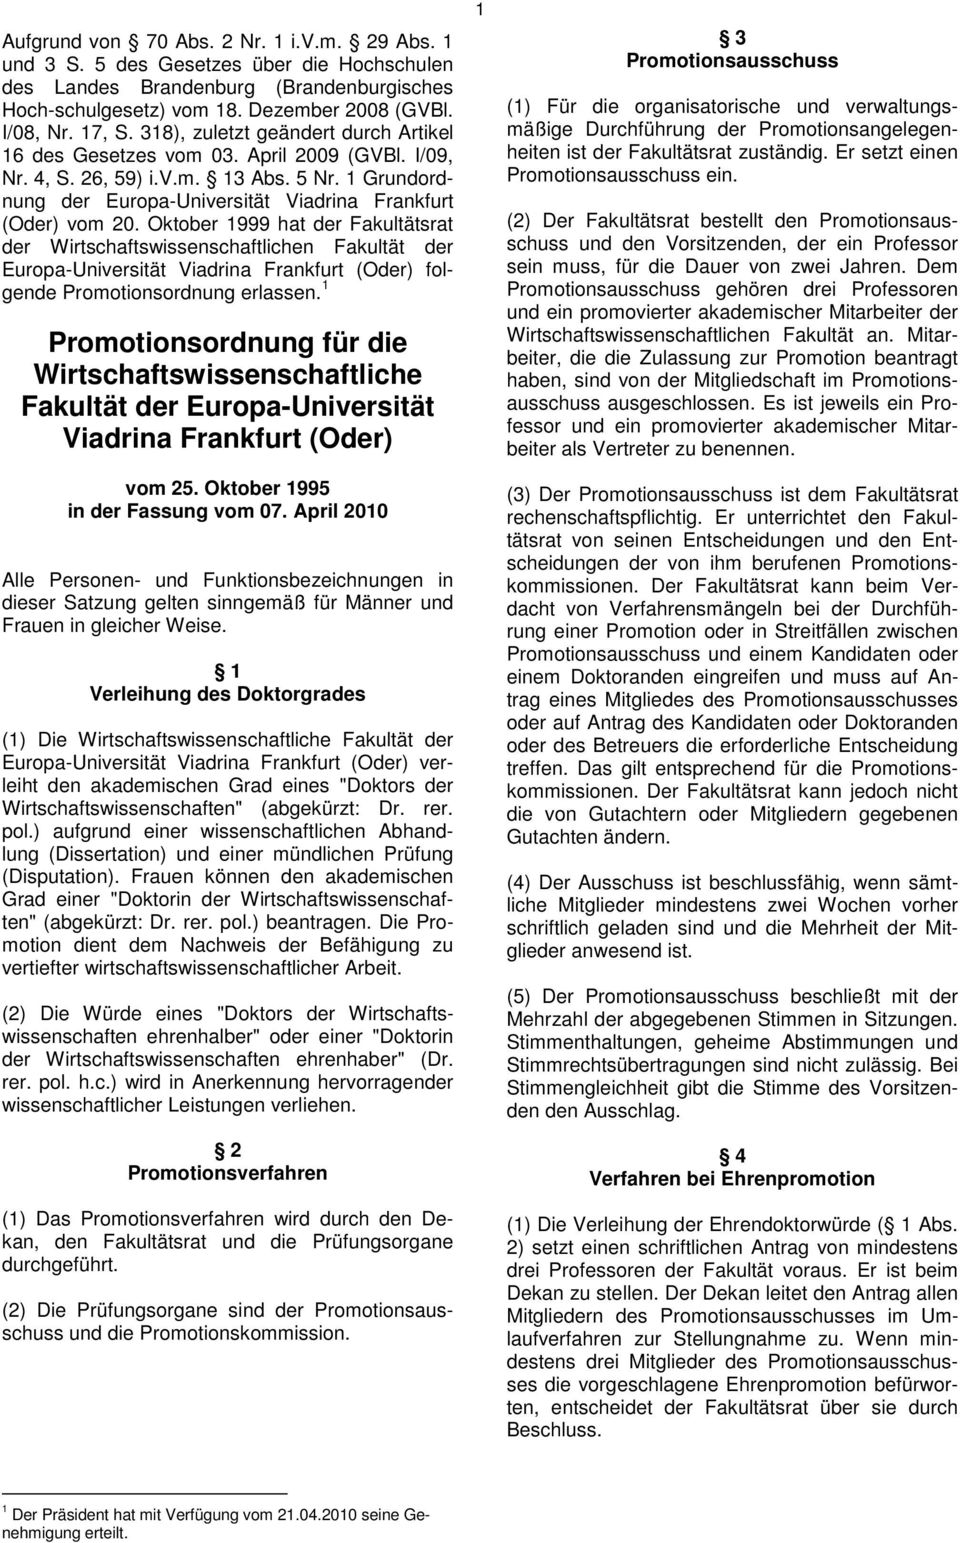 Oktober 1999 hat der Fakultätsrat der Wirtschaftswissenschaftlichen Fakultät der Europa-Universität Viadrina Frankfurt (Oder) folgende Promotionsordnung erlassen.